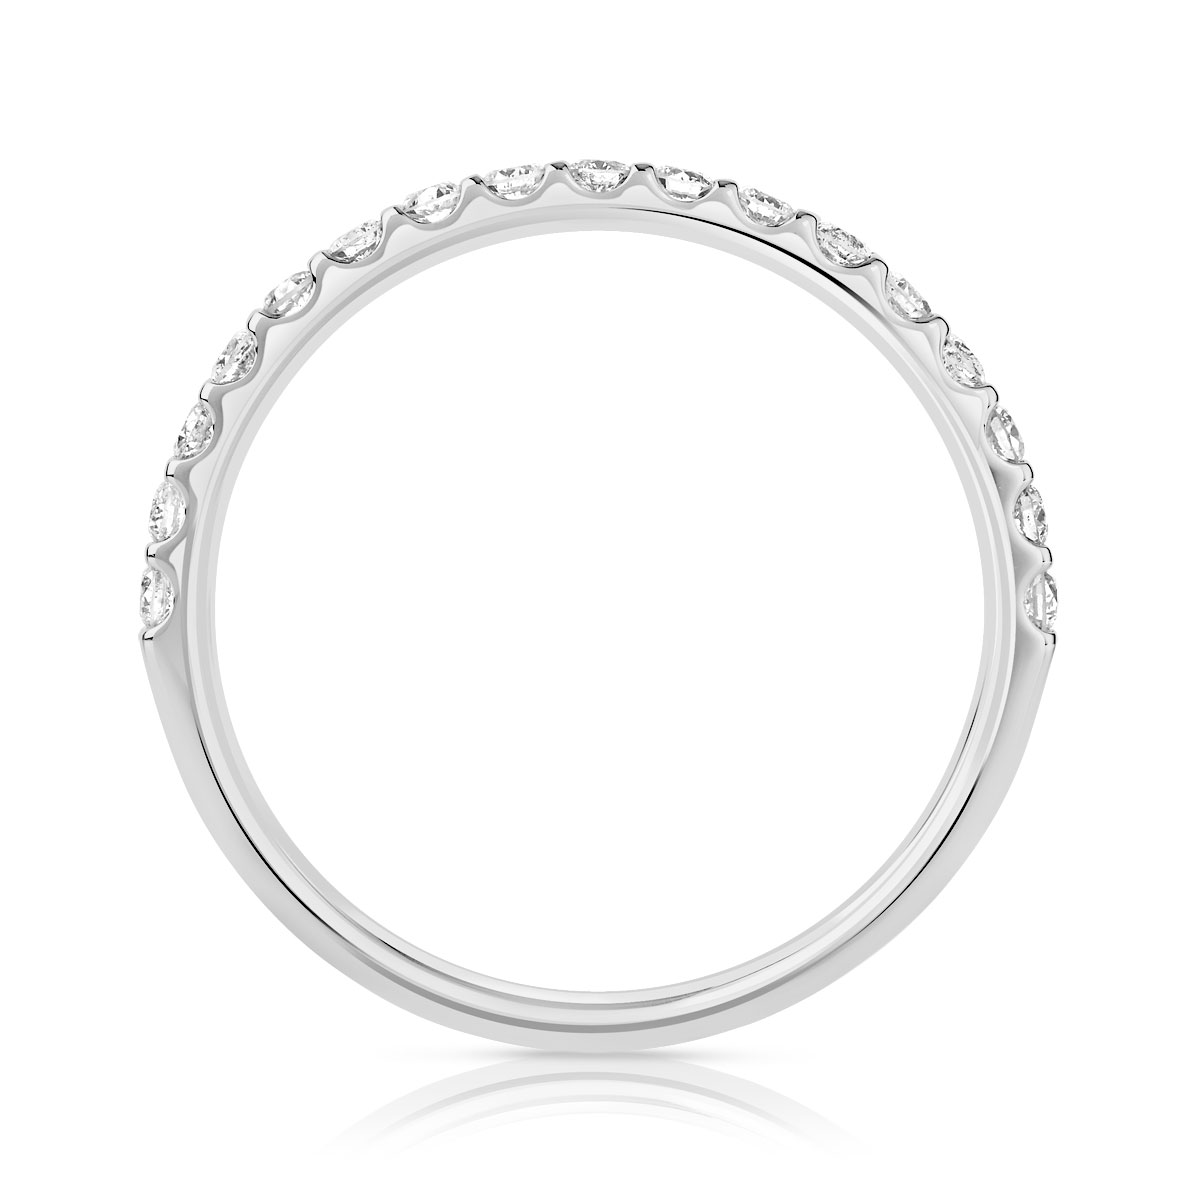 Alliance demi-t or 750 blanc diamants synthétiques 0.25 carat - vue 2